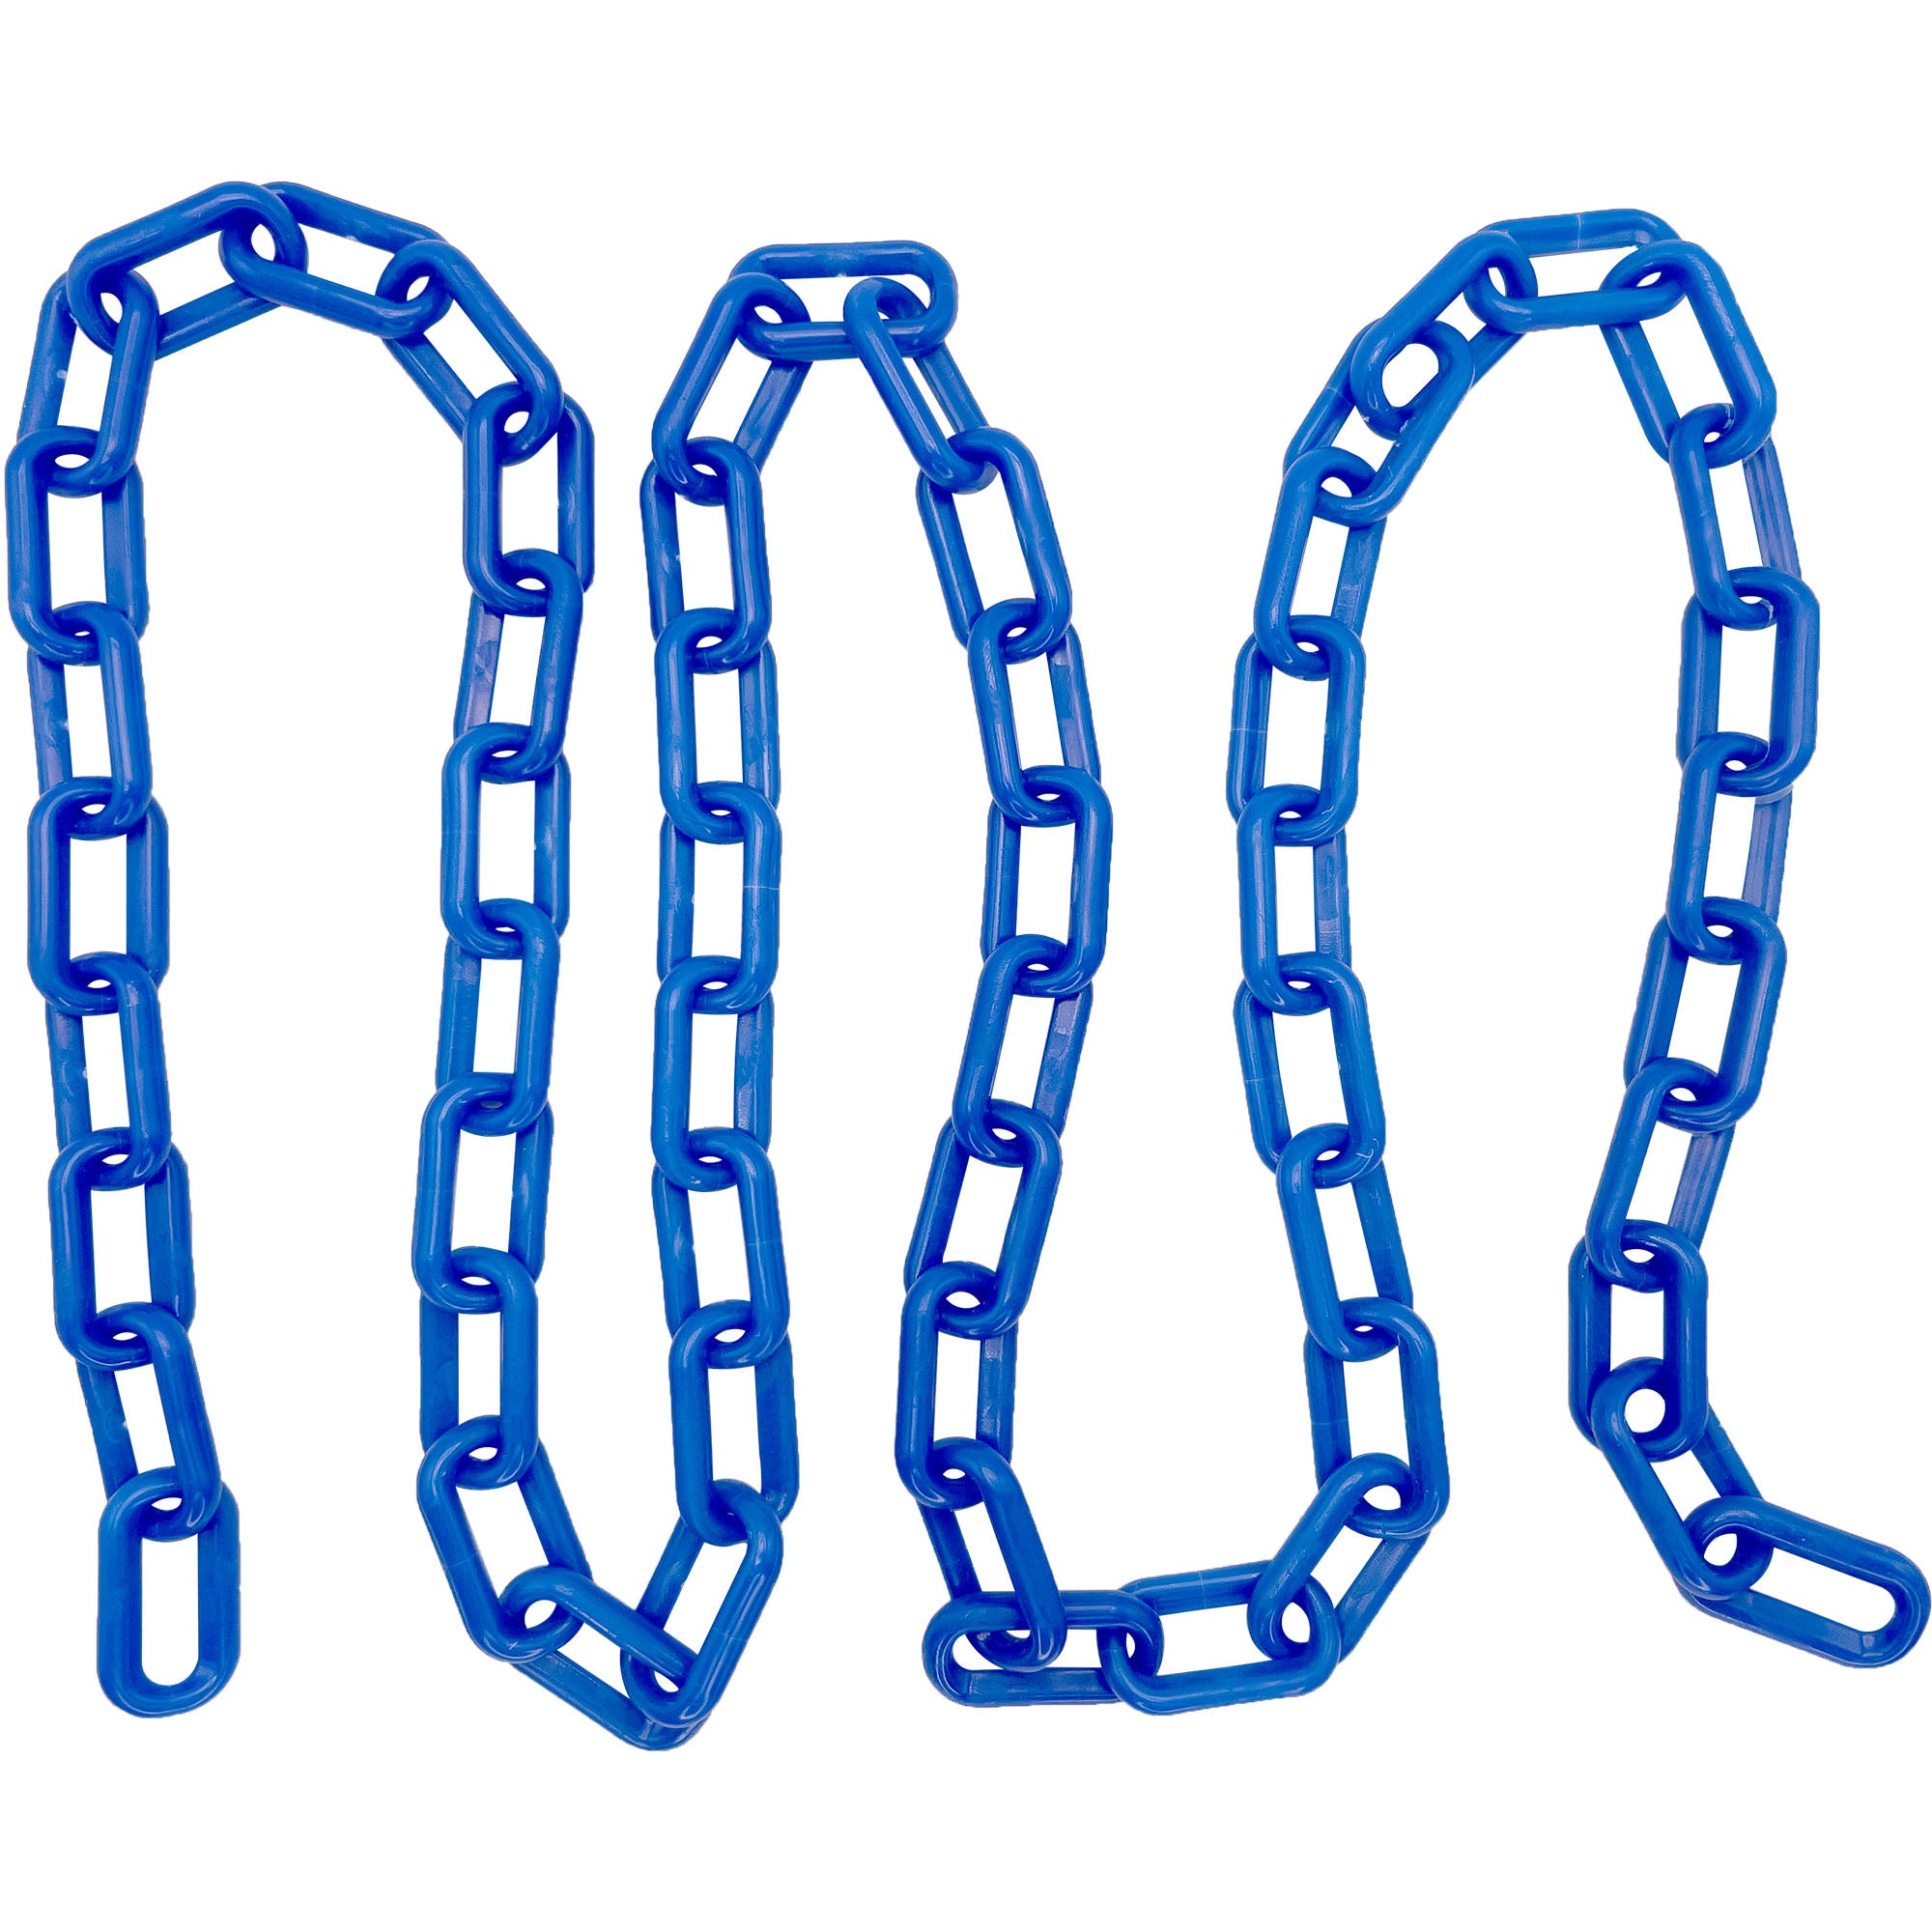 2001 5ft Medium Plastic Chain